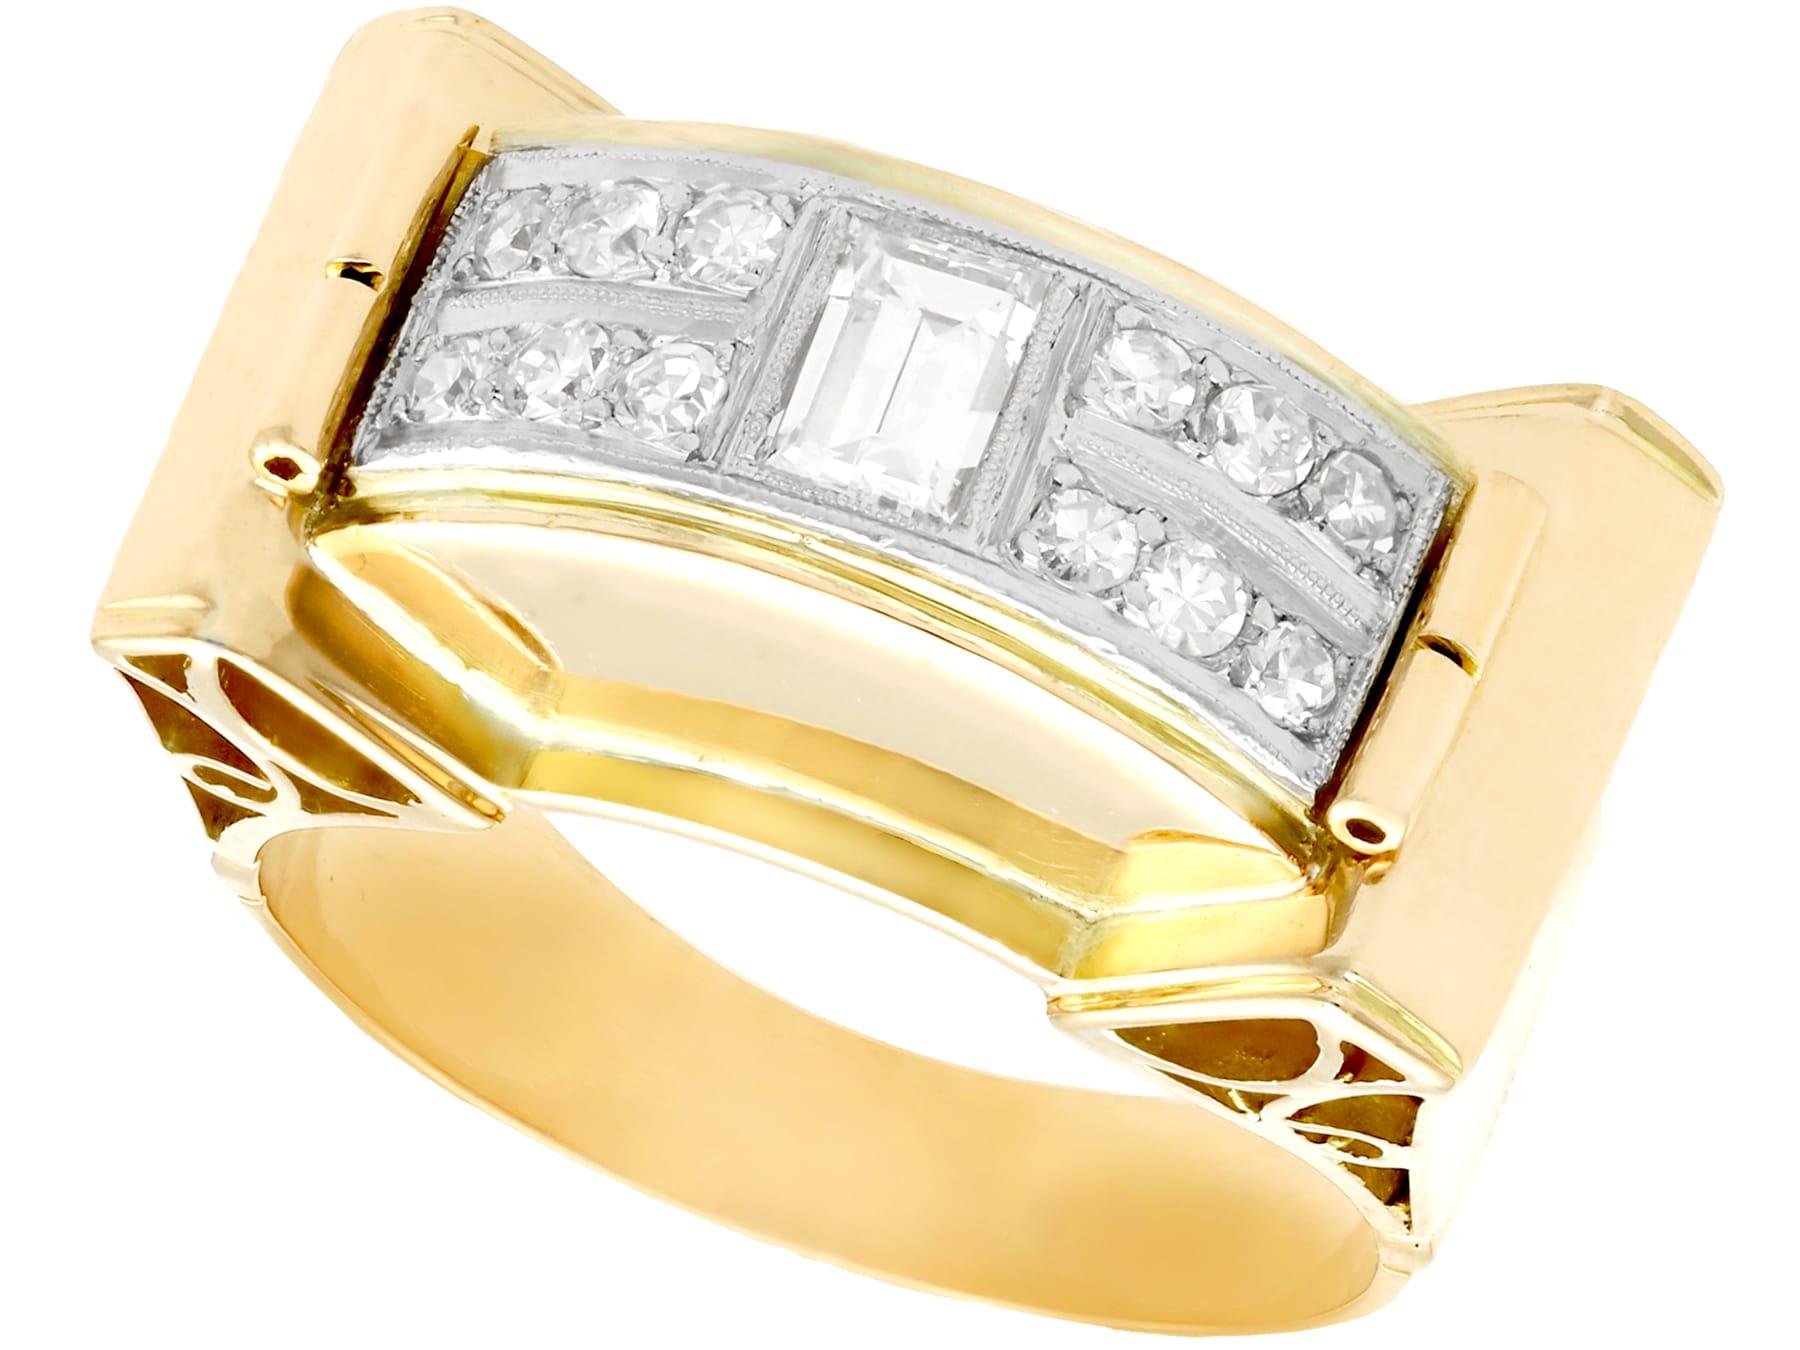 Ein beeindruckender Vintage Art Deco 0,98 Karat Diamant und 18 Karat Gelbgold, 18 Karat Weißgold gesetzt Kleid Ring; Teil unserer vielfältigen Diamant-Schmuck und Nachlass-Schmuck-Kollektionen

Dieser feine und beeindruckende Art-Déco-Diamantring